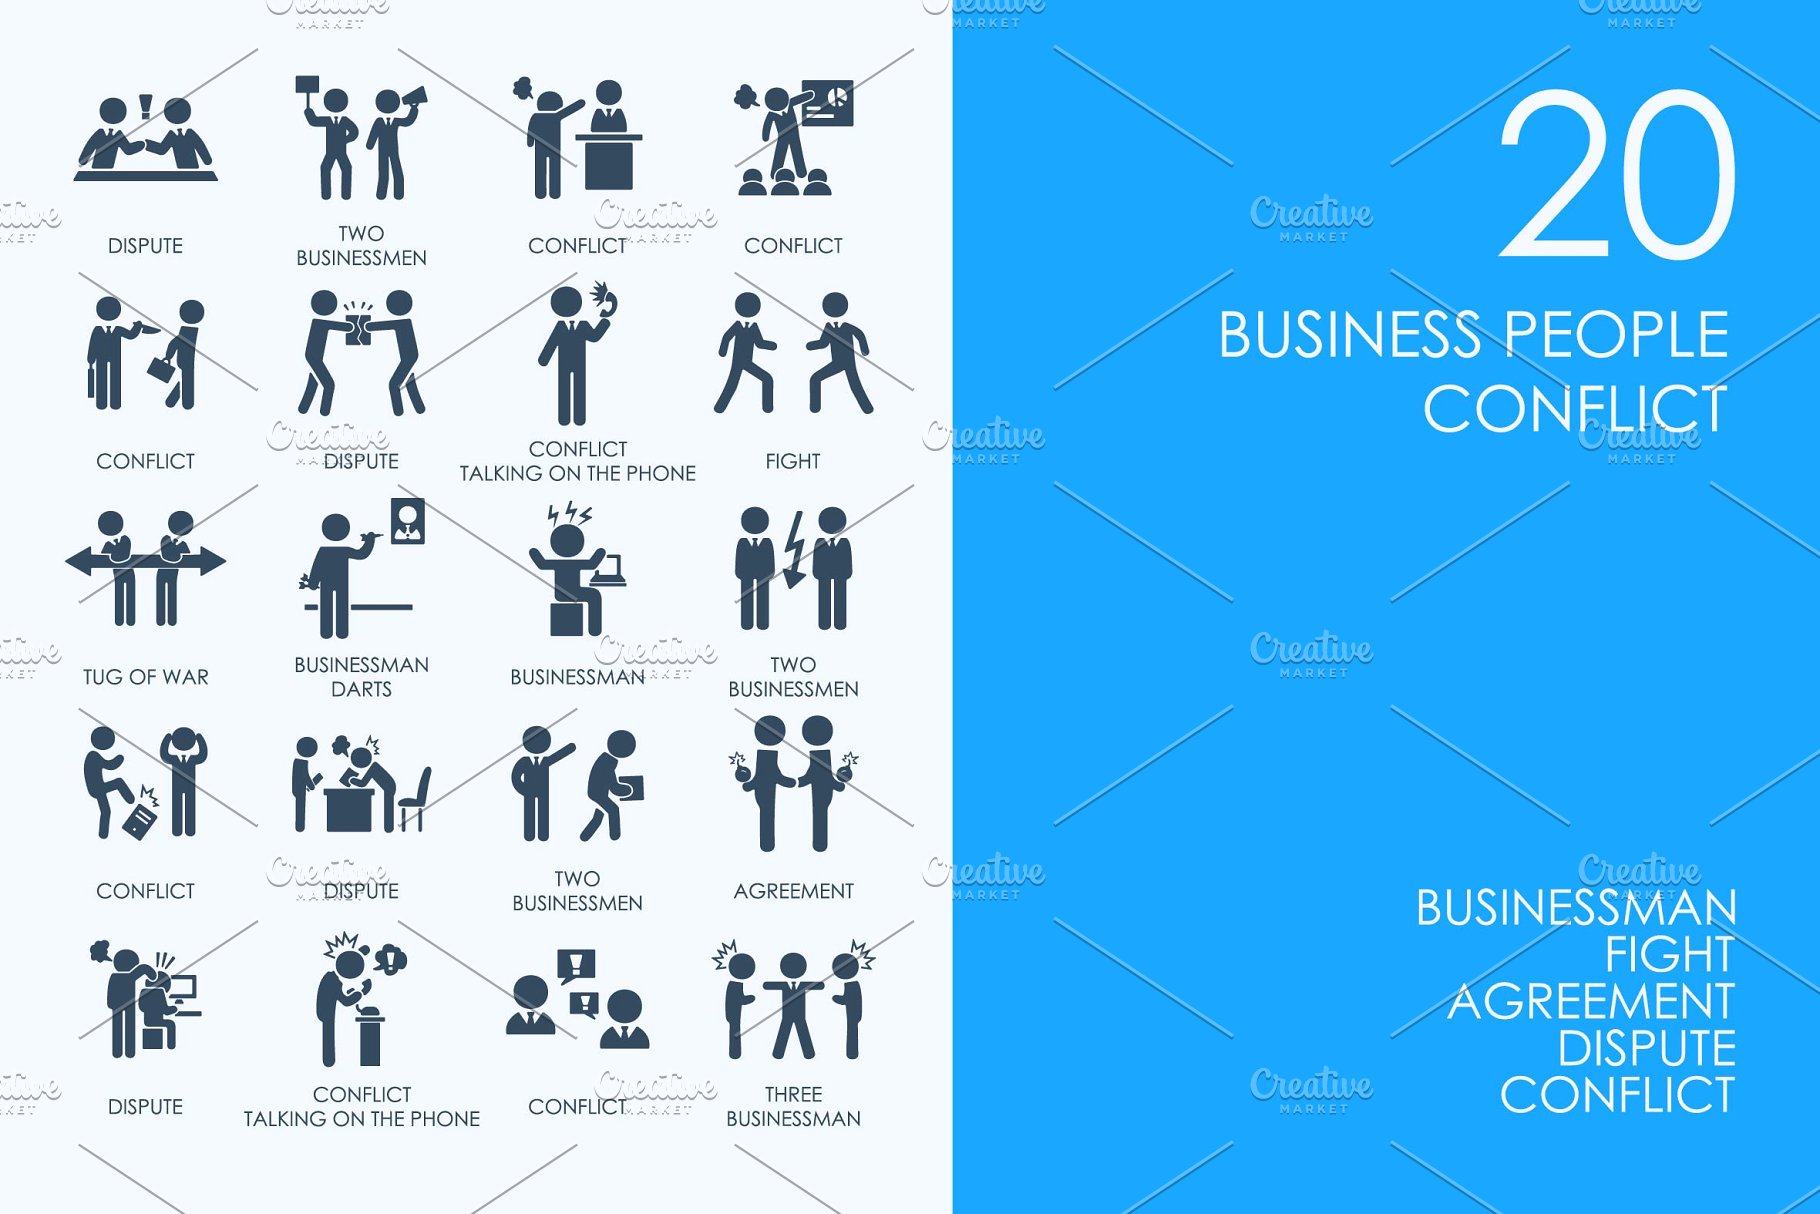 商务人物图标 Business people conflic